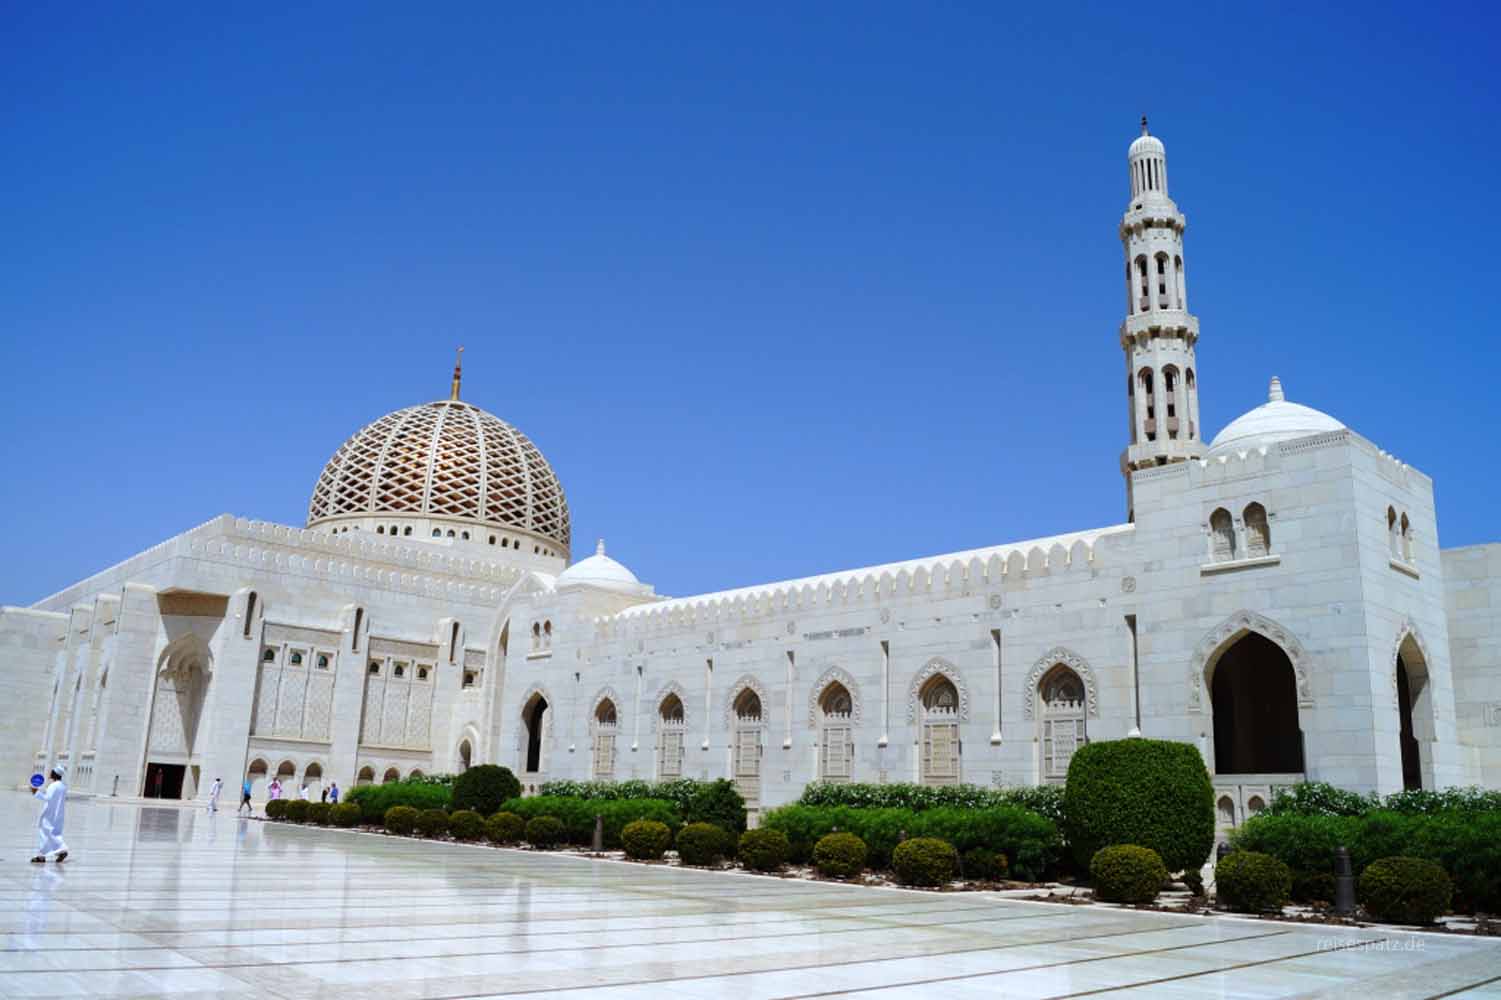 Moschee Sultan Qaboos, Oman Sehenswürdigkeiten